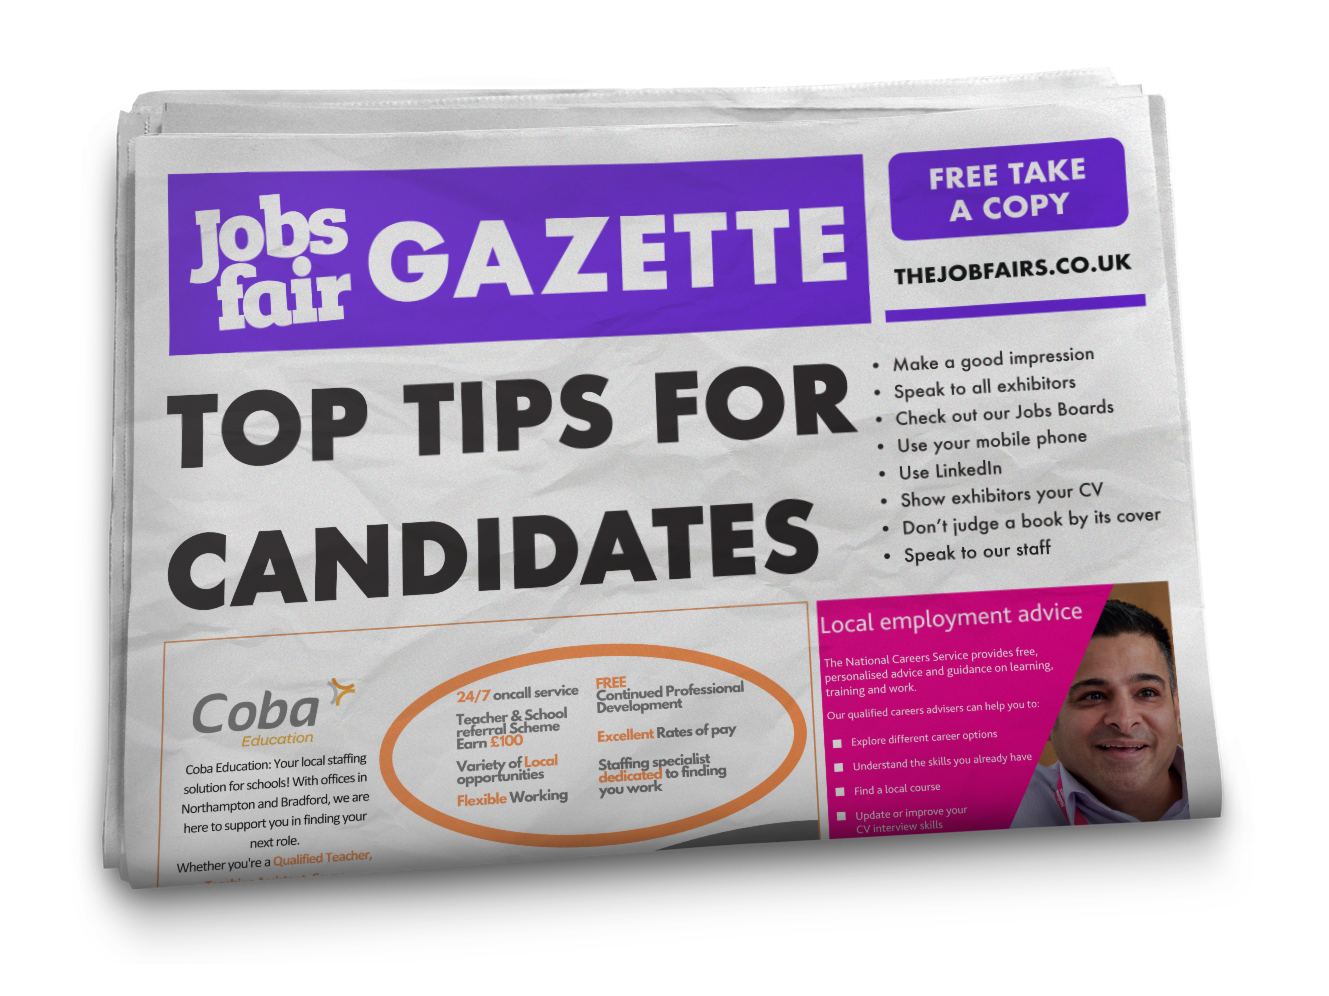 Jobs Fair Gazette